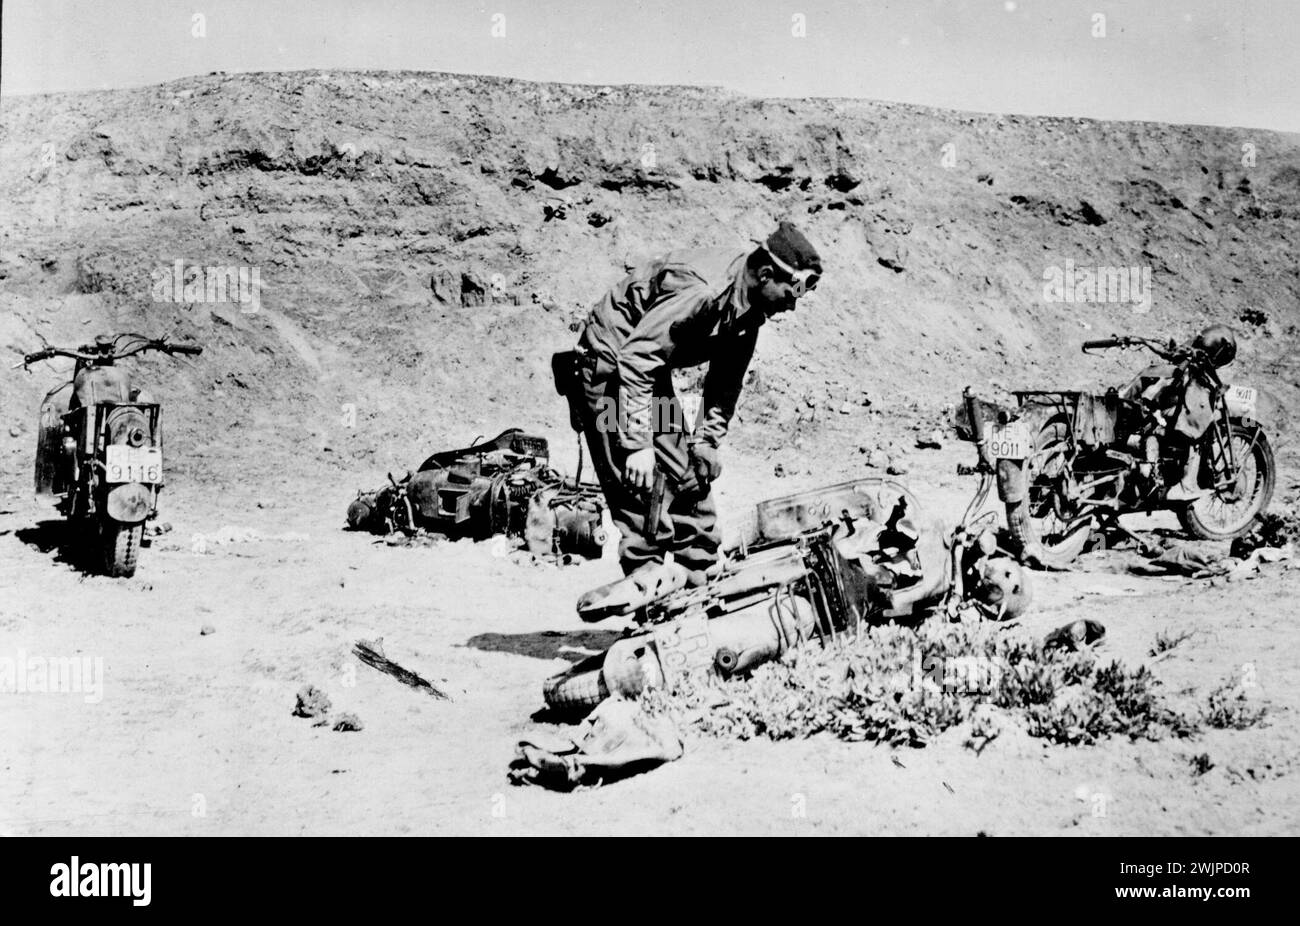 Équipement Axis capturé en Tunisie -- Un soldat américain examine des motos italiennes abandonnées précipitamment par les forces de l'axe qui fuyaient avant une attaque de l'armée américaine en Tunisie. 21 juin 1943. (Photo du U.S. Office of War information Picture). Banque D'Images